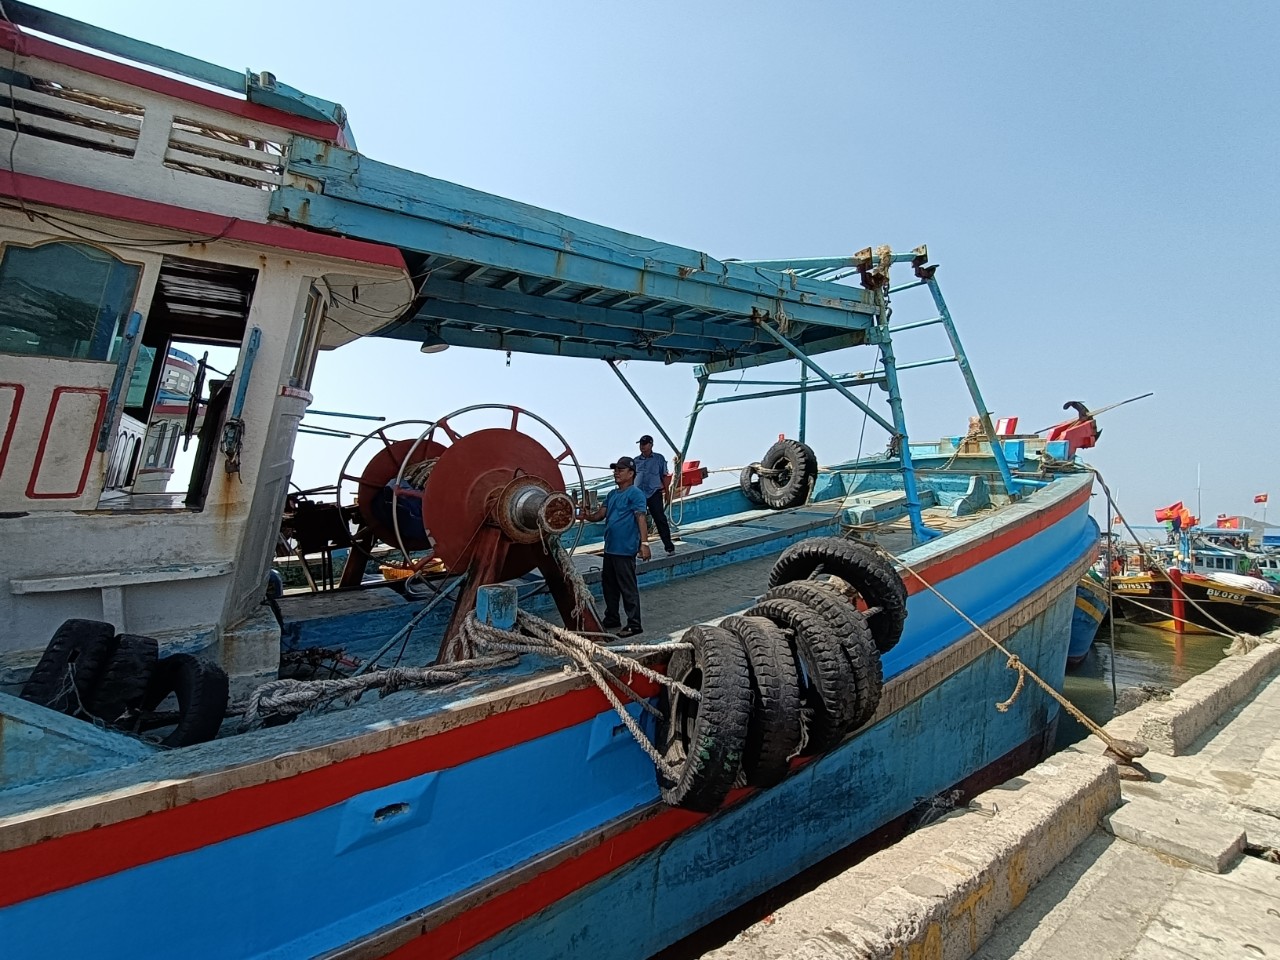 Tàu lưới kéo của ông Trần Ngọc Phương (xã Phước Tỉnh, huyện Long Điền) chỉ đi đánh bắt vùng khơi và khi tàu hỏng sẽ nghỉ, không đóng mới.